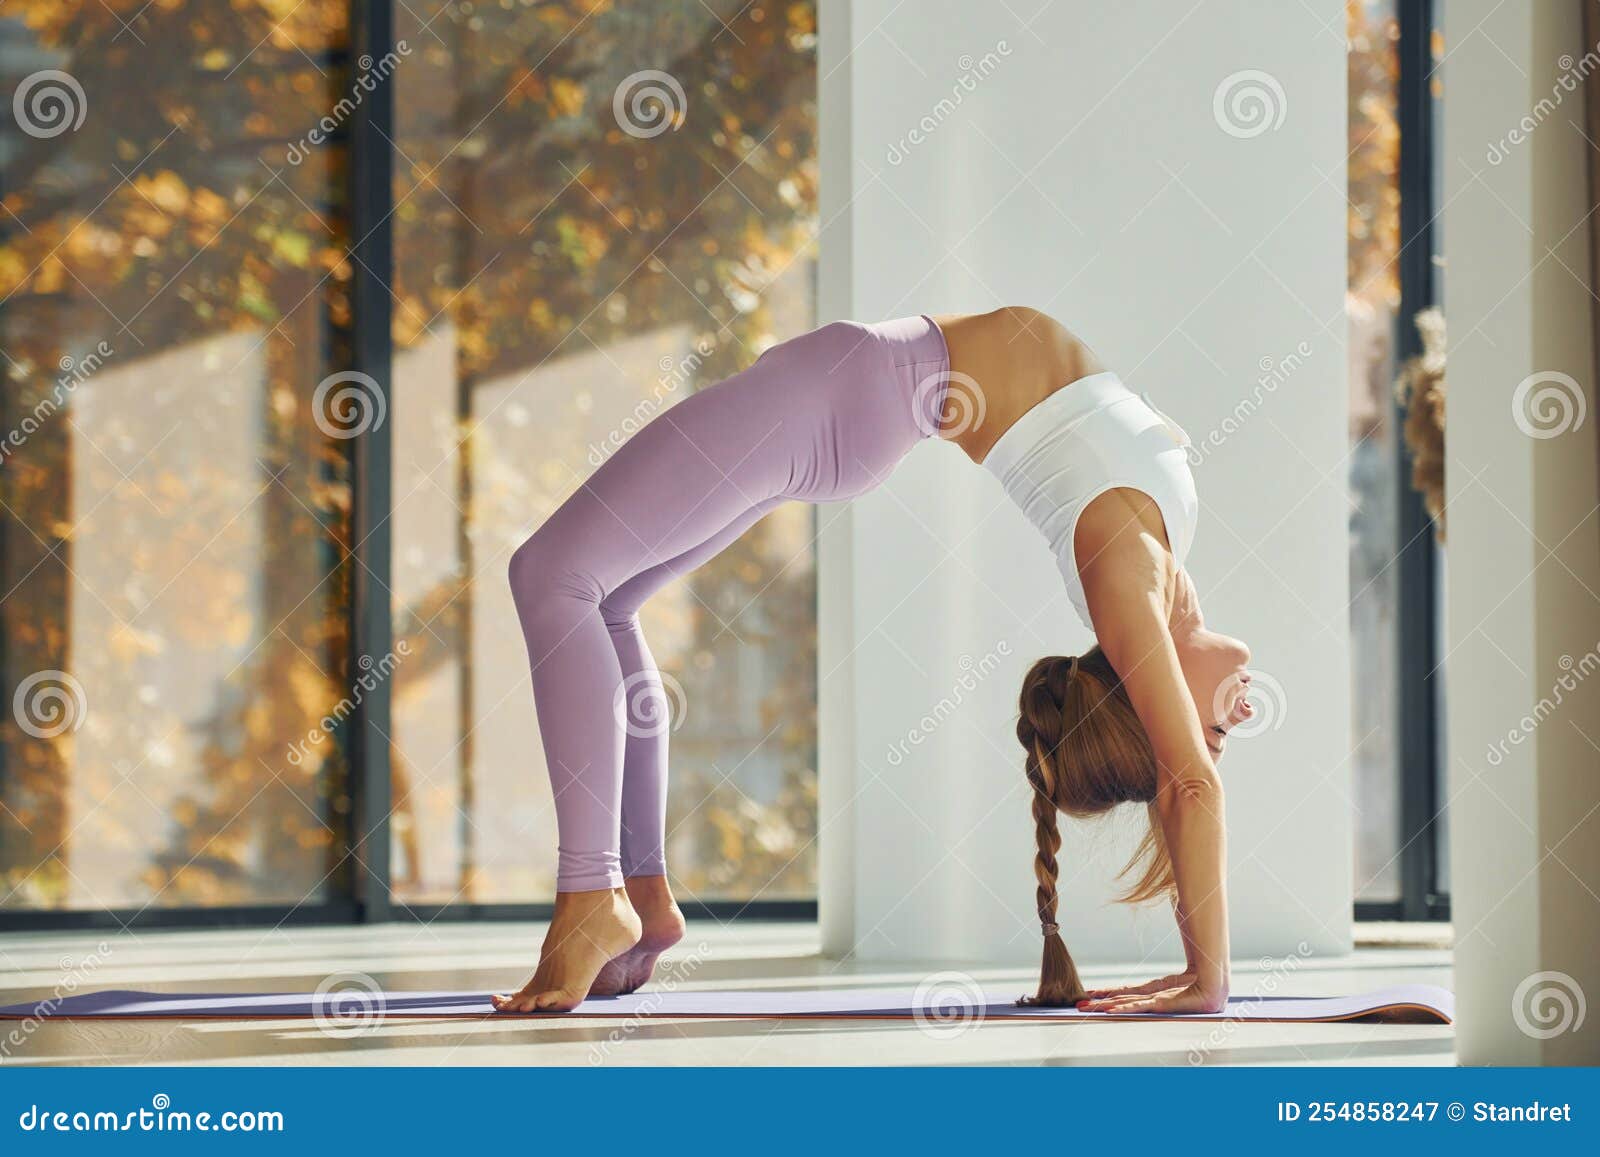 Pose de yoga mujer en ropa deportiva está en el interior